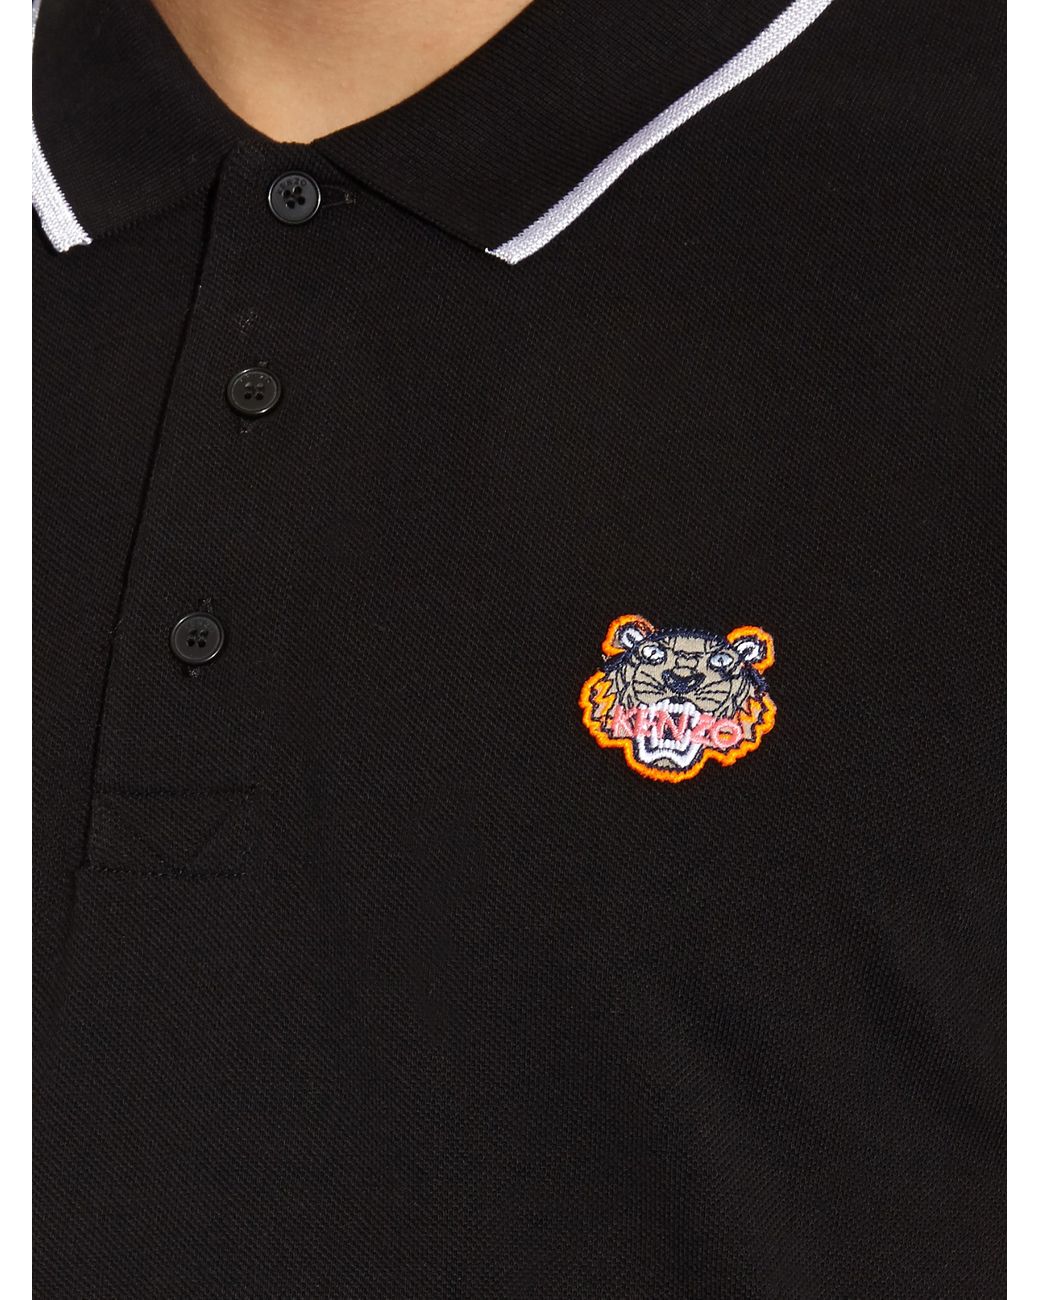 Details about   Kenzo Polo Shirt TIGER Cotton Man Pink 4BA 5PO001 33MWF Sz XL MAKE OFFER 